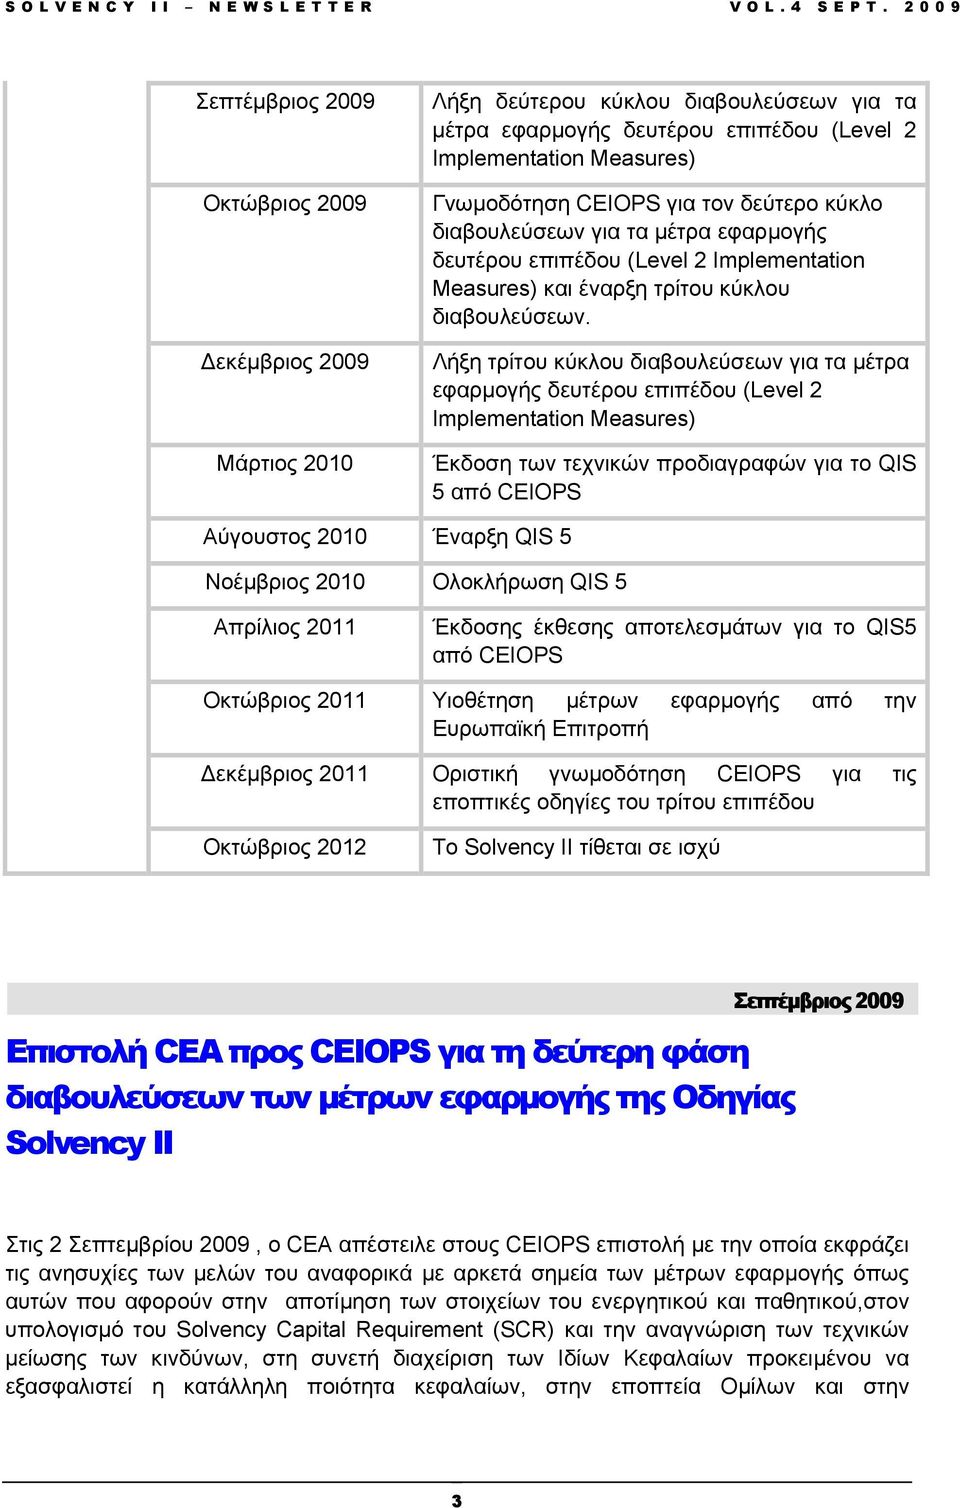 Λήξη τρίτου κύκλου διαβουλεύσεων για τα µέτρα εφαρµογής δευτέρου επιπέδου (Level 2 Implementation Measures) Έκδοση των τεχνικών προδιαγραφών για το QIS 5 από CEIOPS Αύγουστος 2010 Έναρξη QIS 5